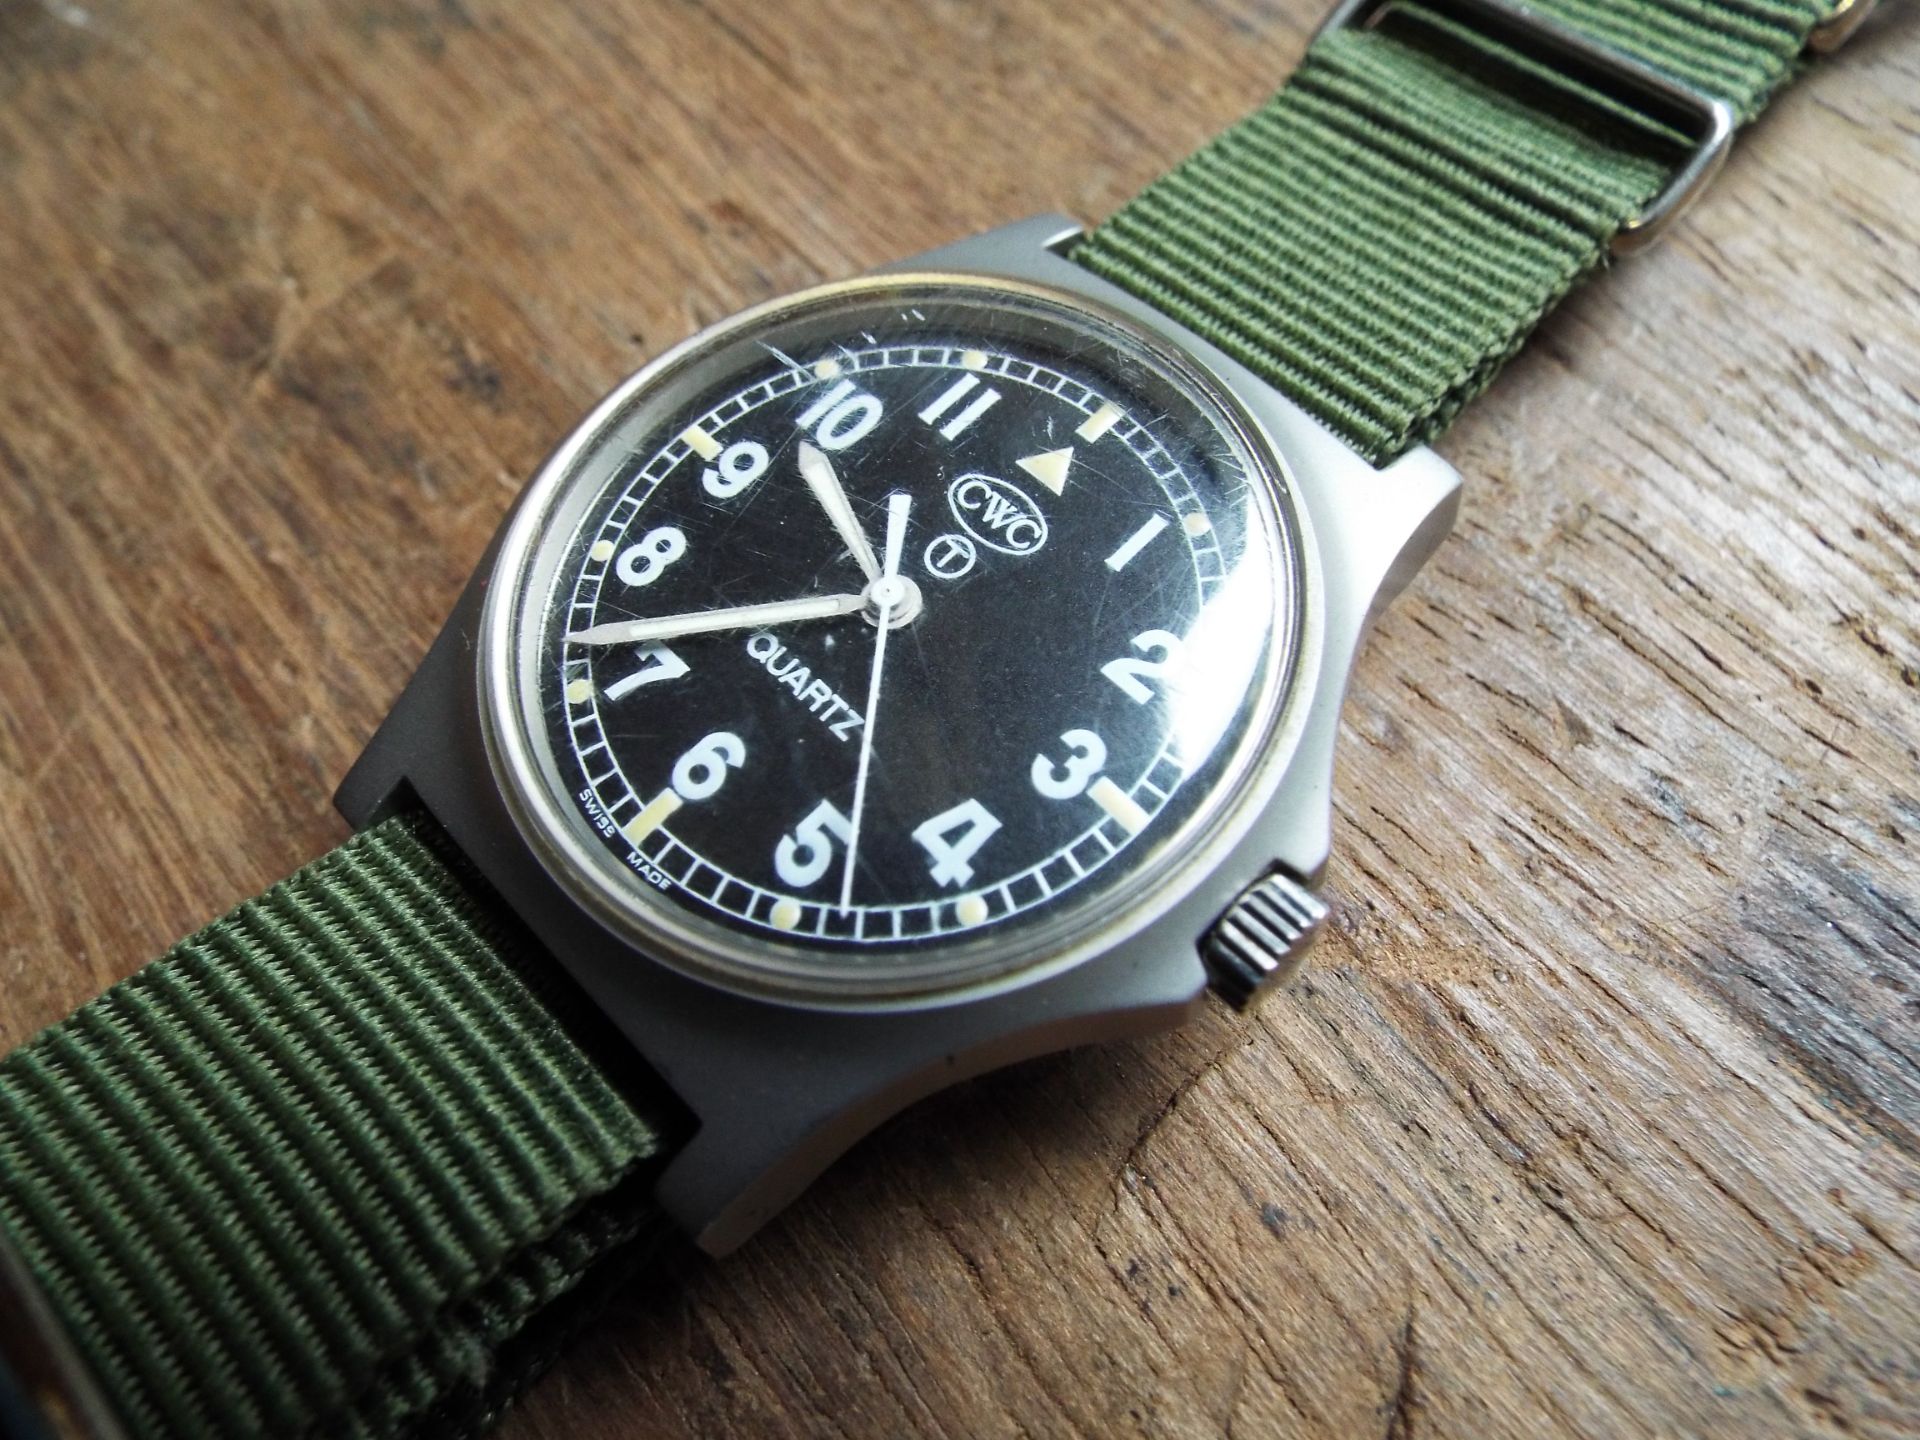 Very Rare Genuine British Army, Waterproof CWC quartz wrist watch - Image 3 of 6